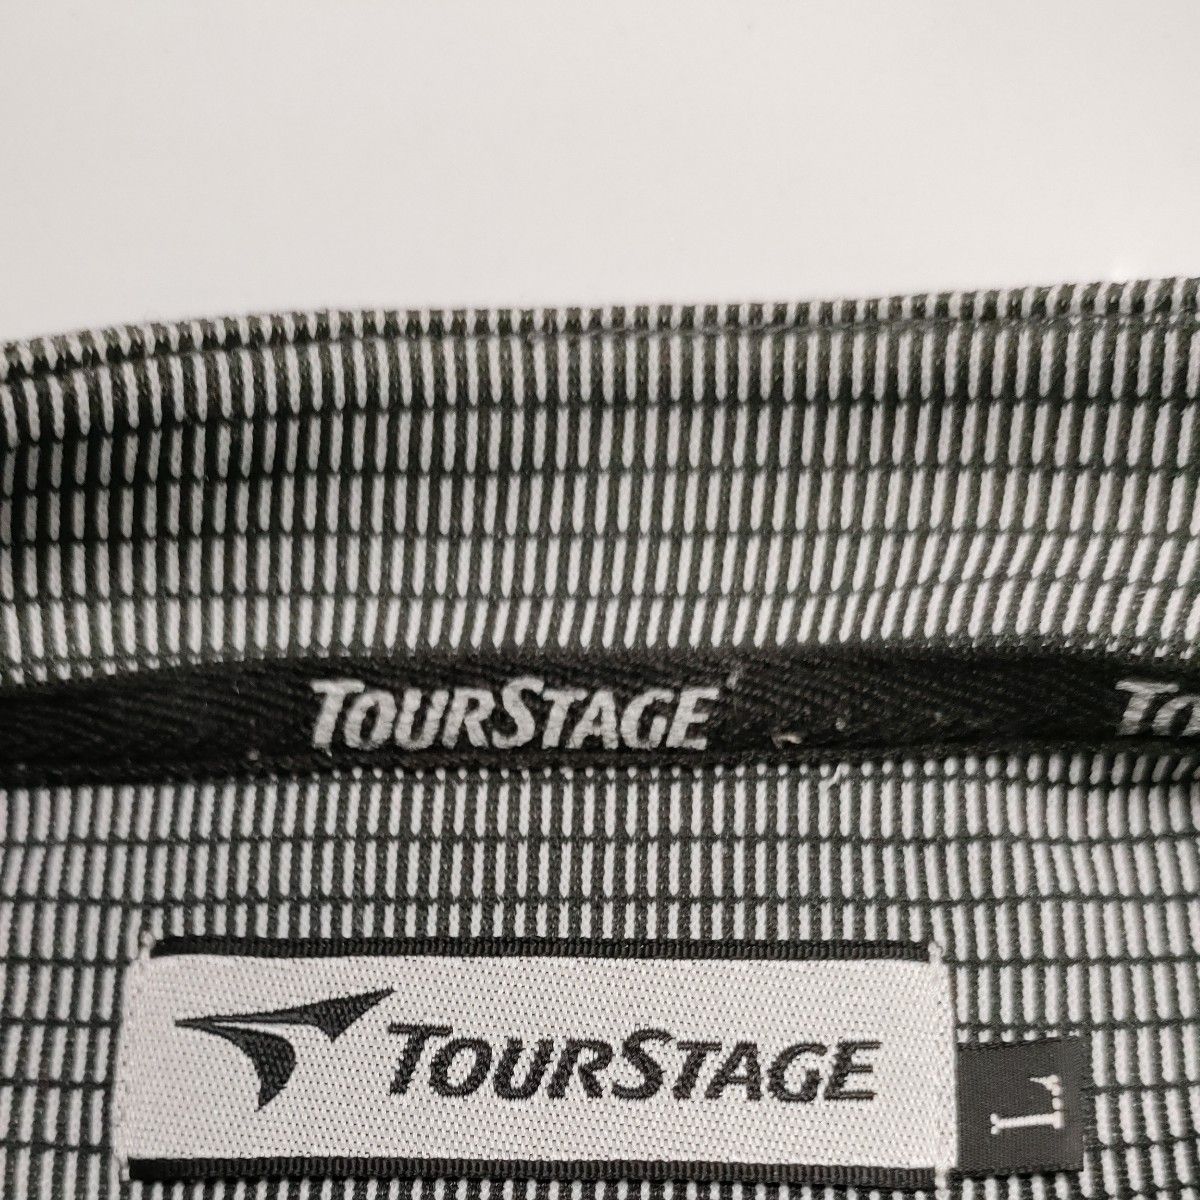 ツアーステージ半袖TシャツL/LL　グレー　ハーフジップ　胸に袖にTOURSTAGE刺繍入り吸汗速乾ポリエステルス素材　